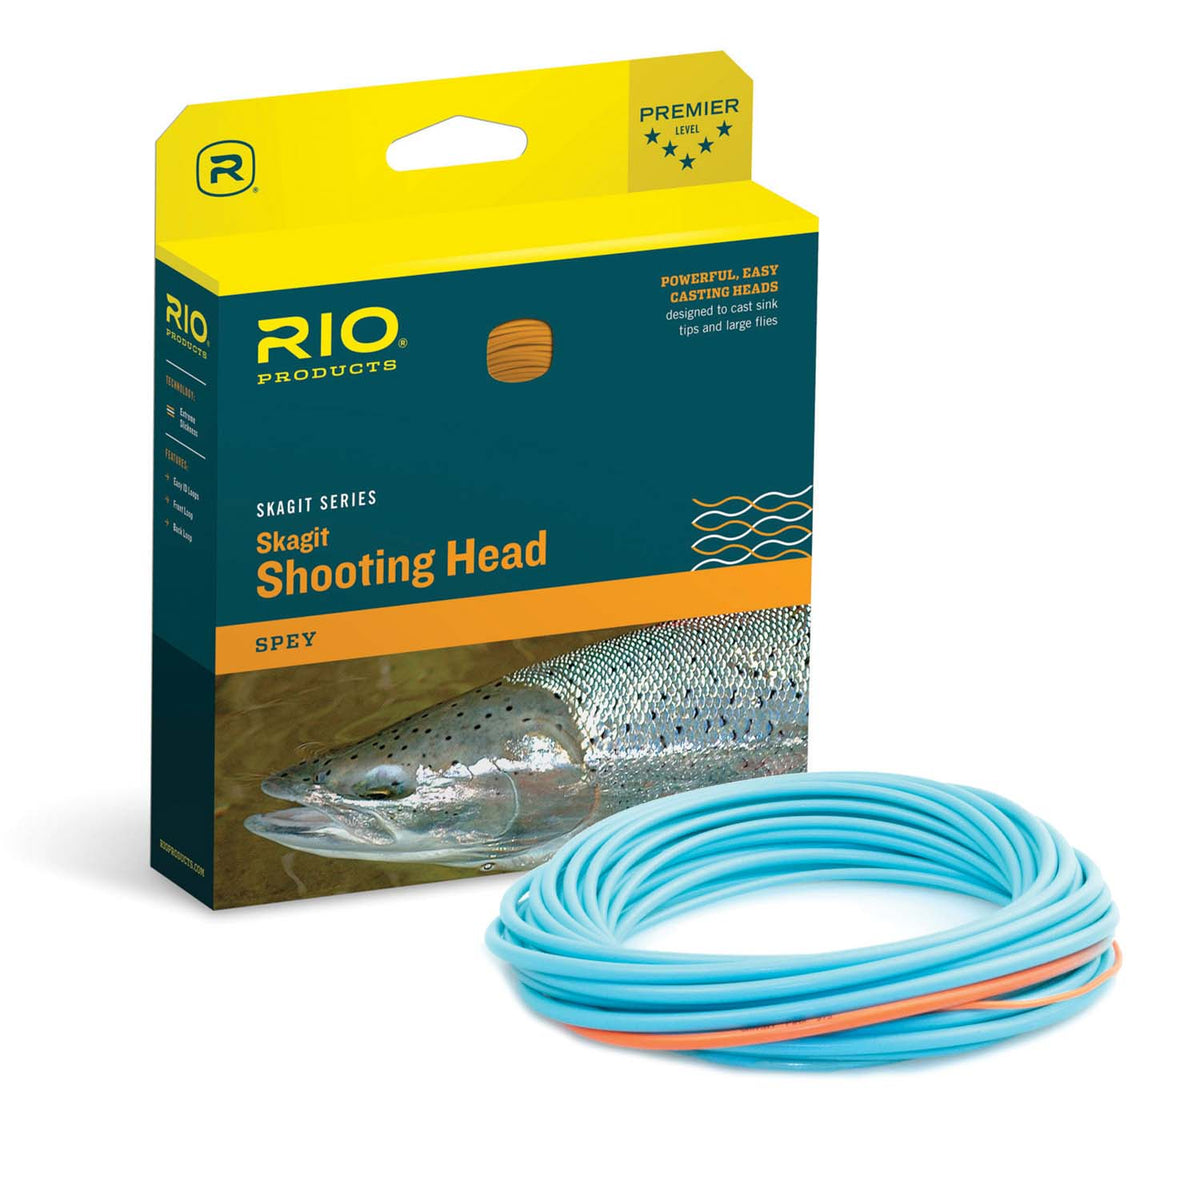 RIO Elite Skagit Max Launch Shooting Head – Guide Flyfishing